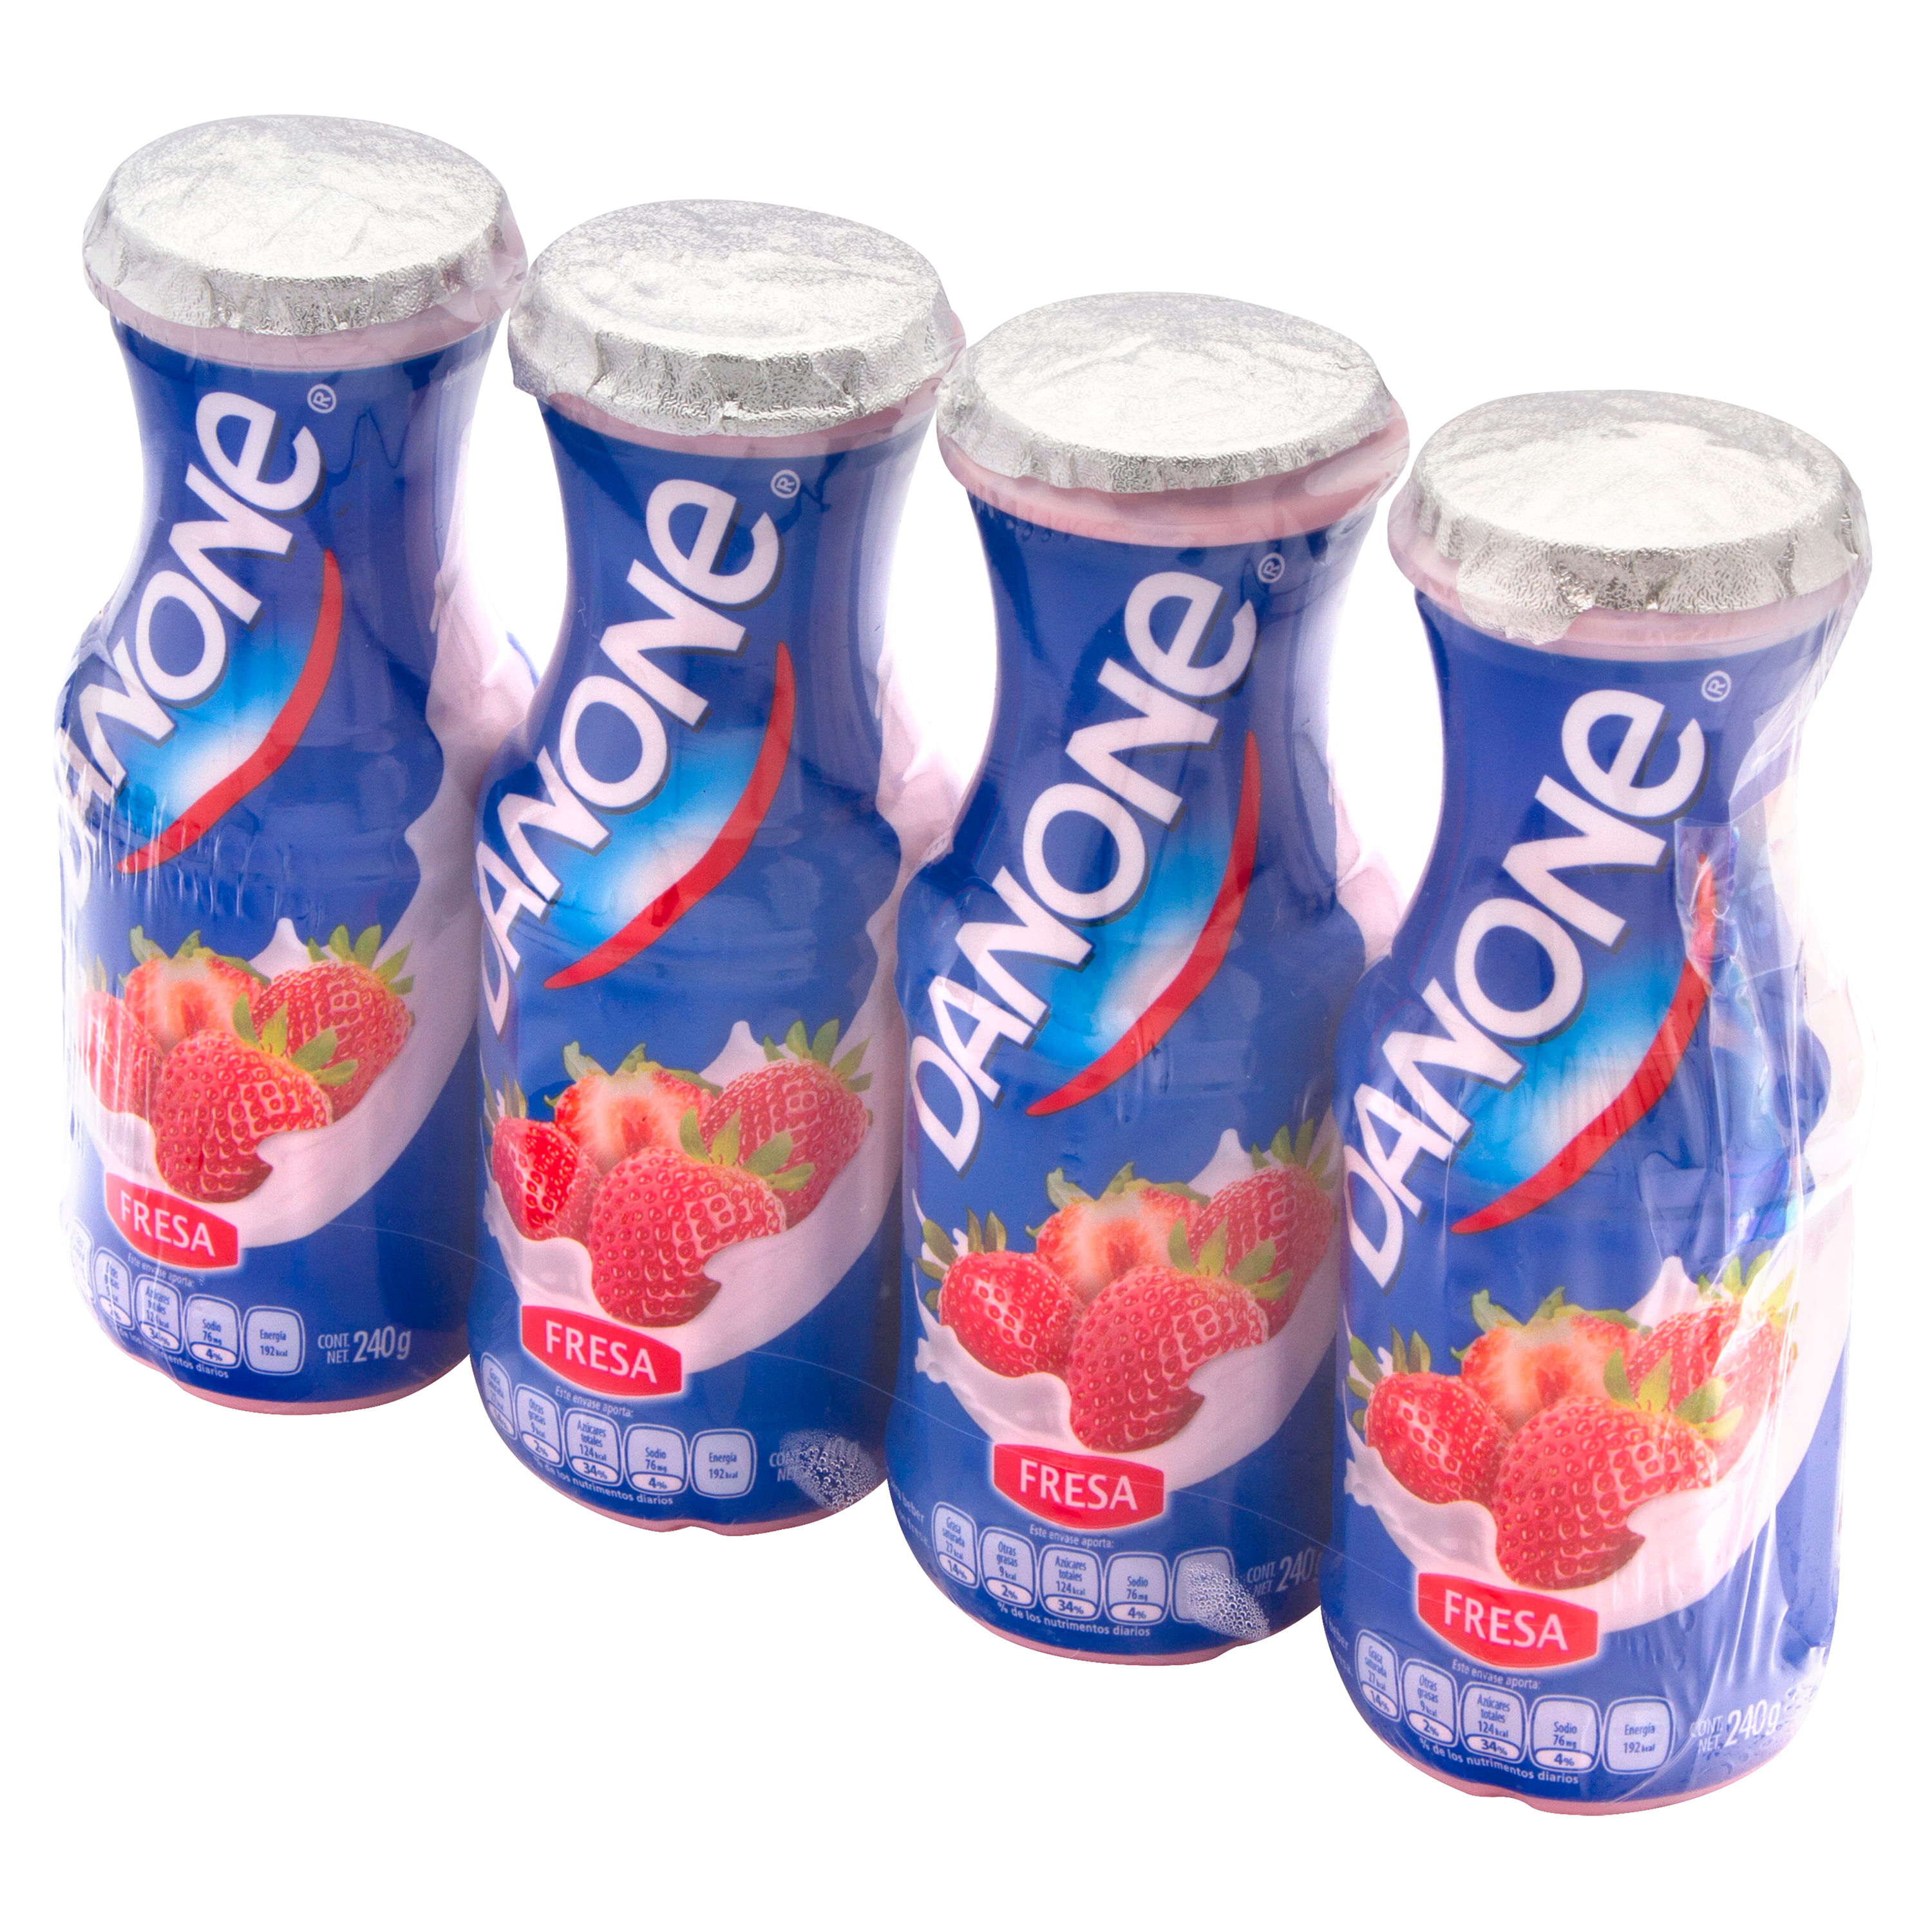 Yogur natural pack 4 unidades 120 g · DANONE · Supermercado El